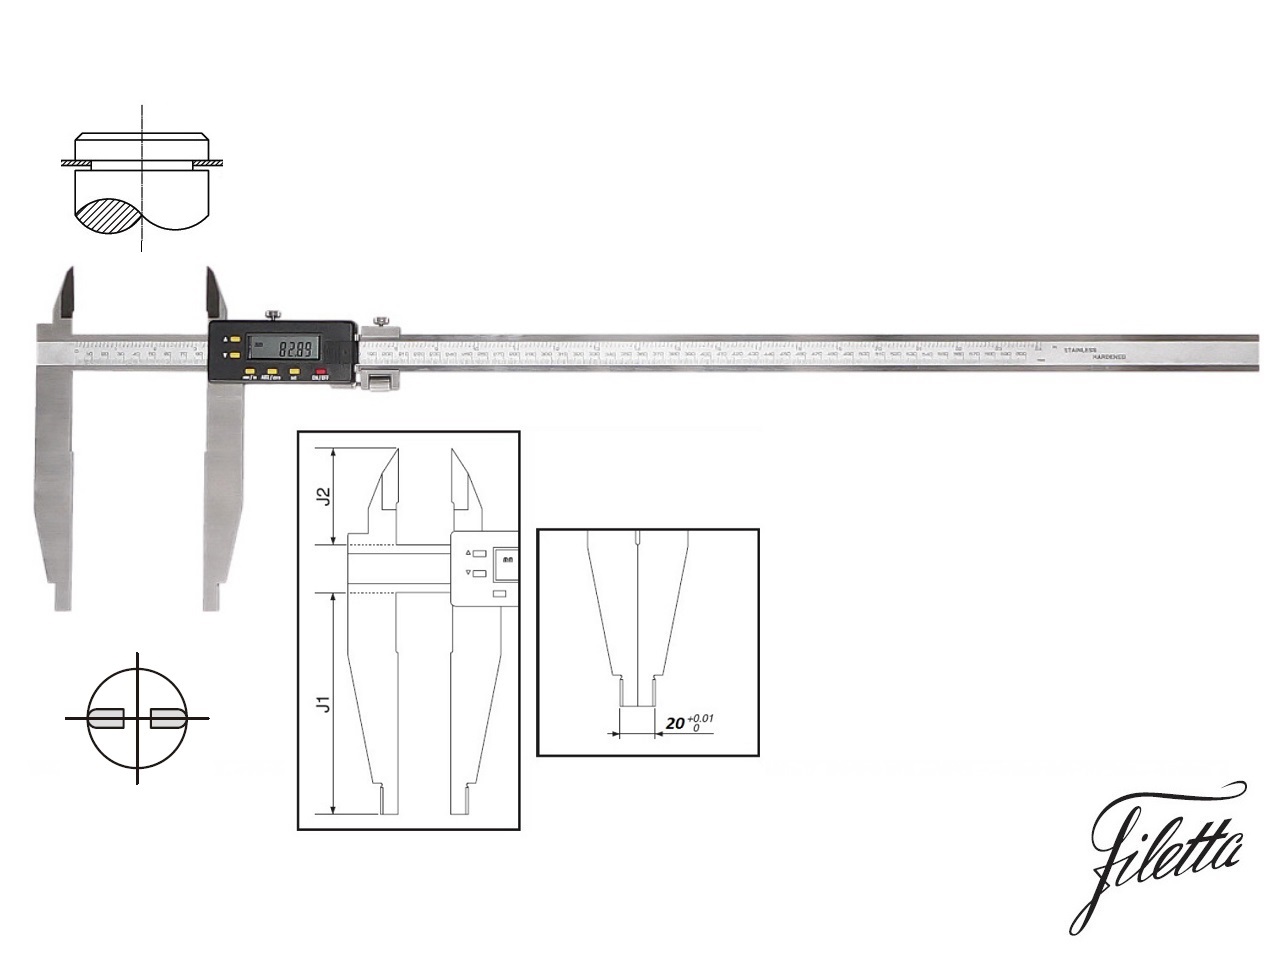 Digitální posuvné měřítko Filetta 0-600/150 mm s měřicími nožíky pro vnější měření